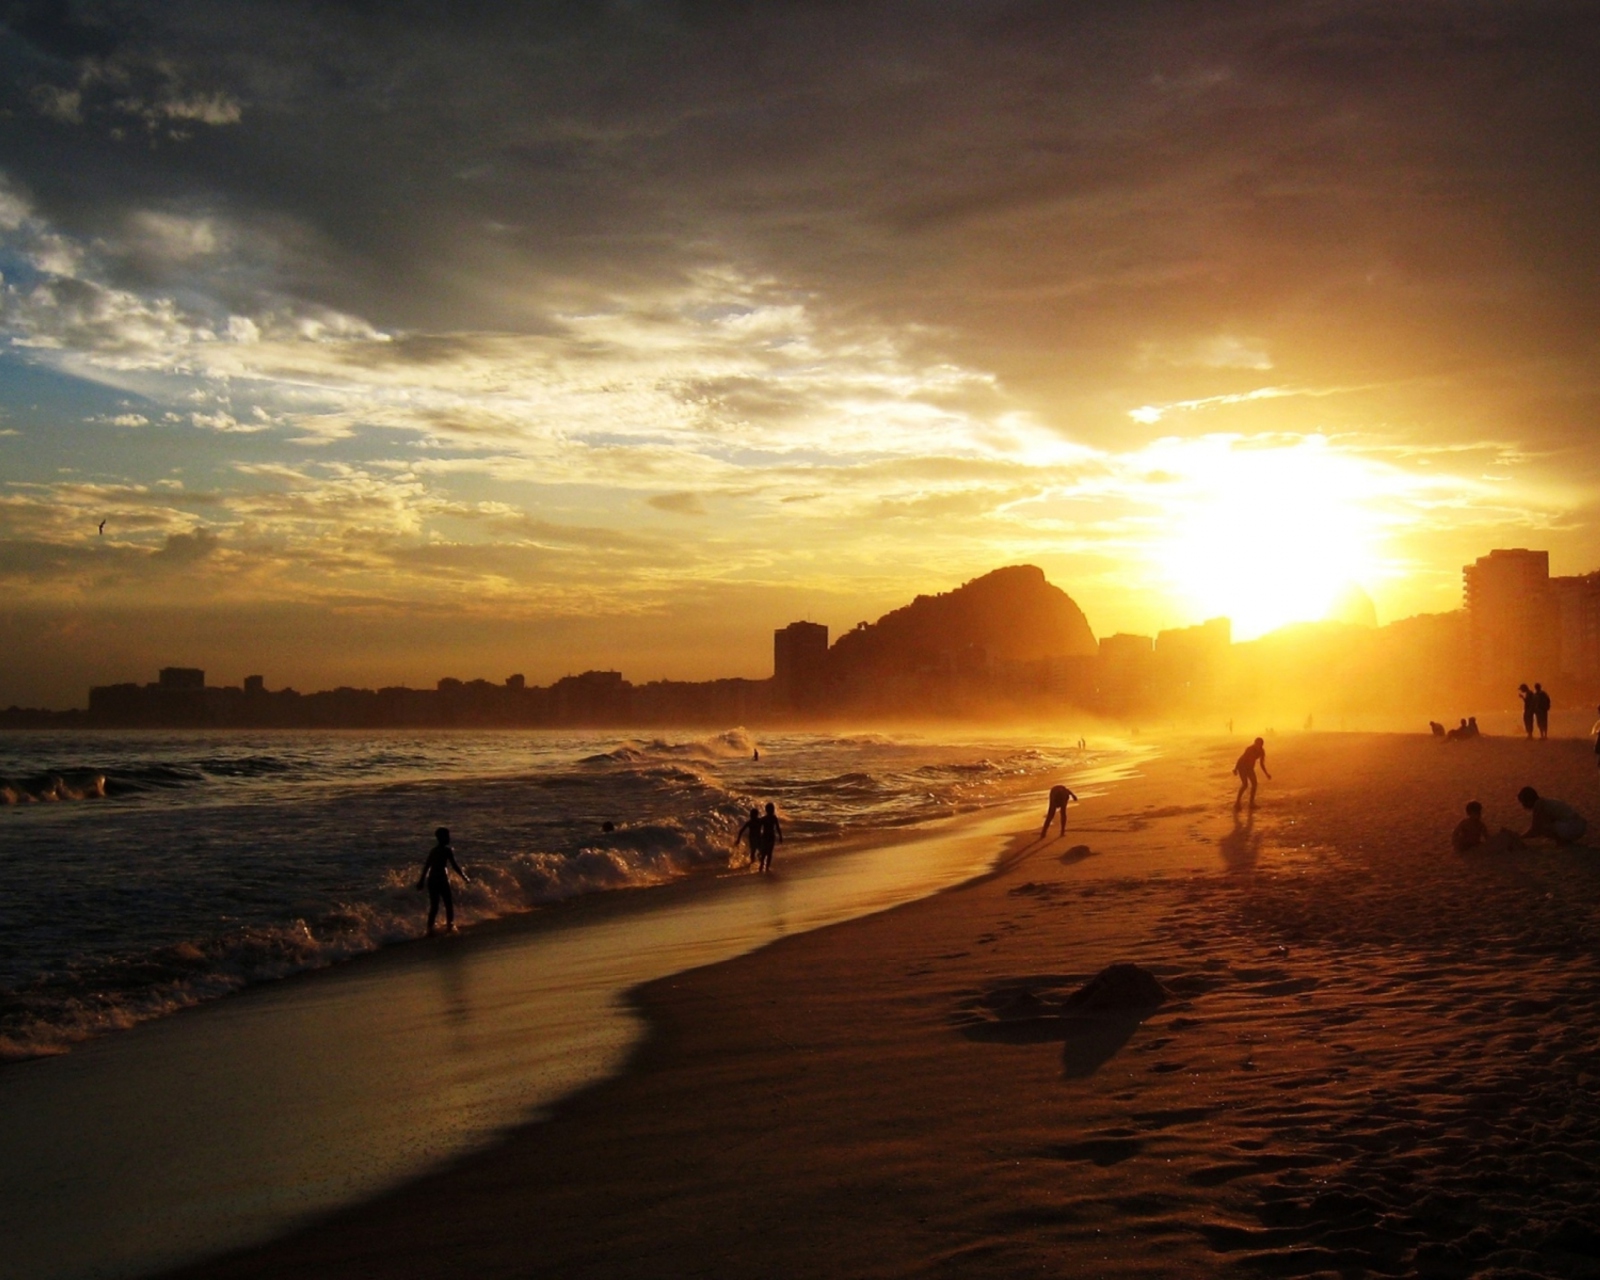 Sfondi Copacabana Beach Sunset 1600x1280